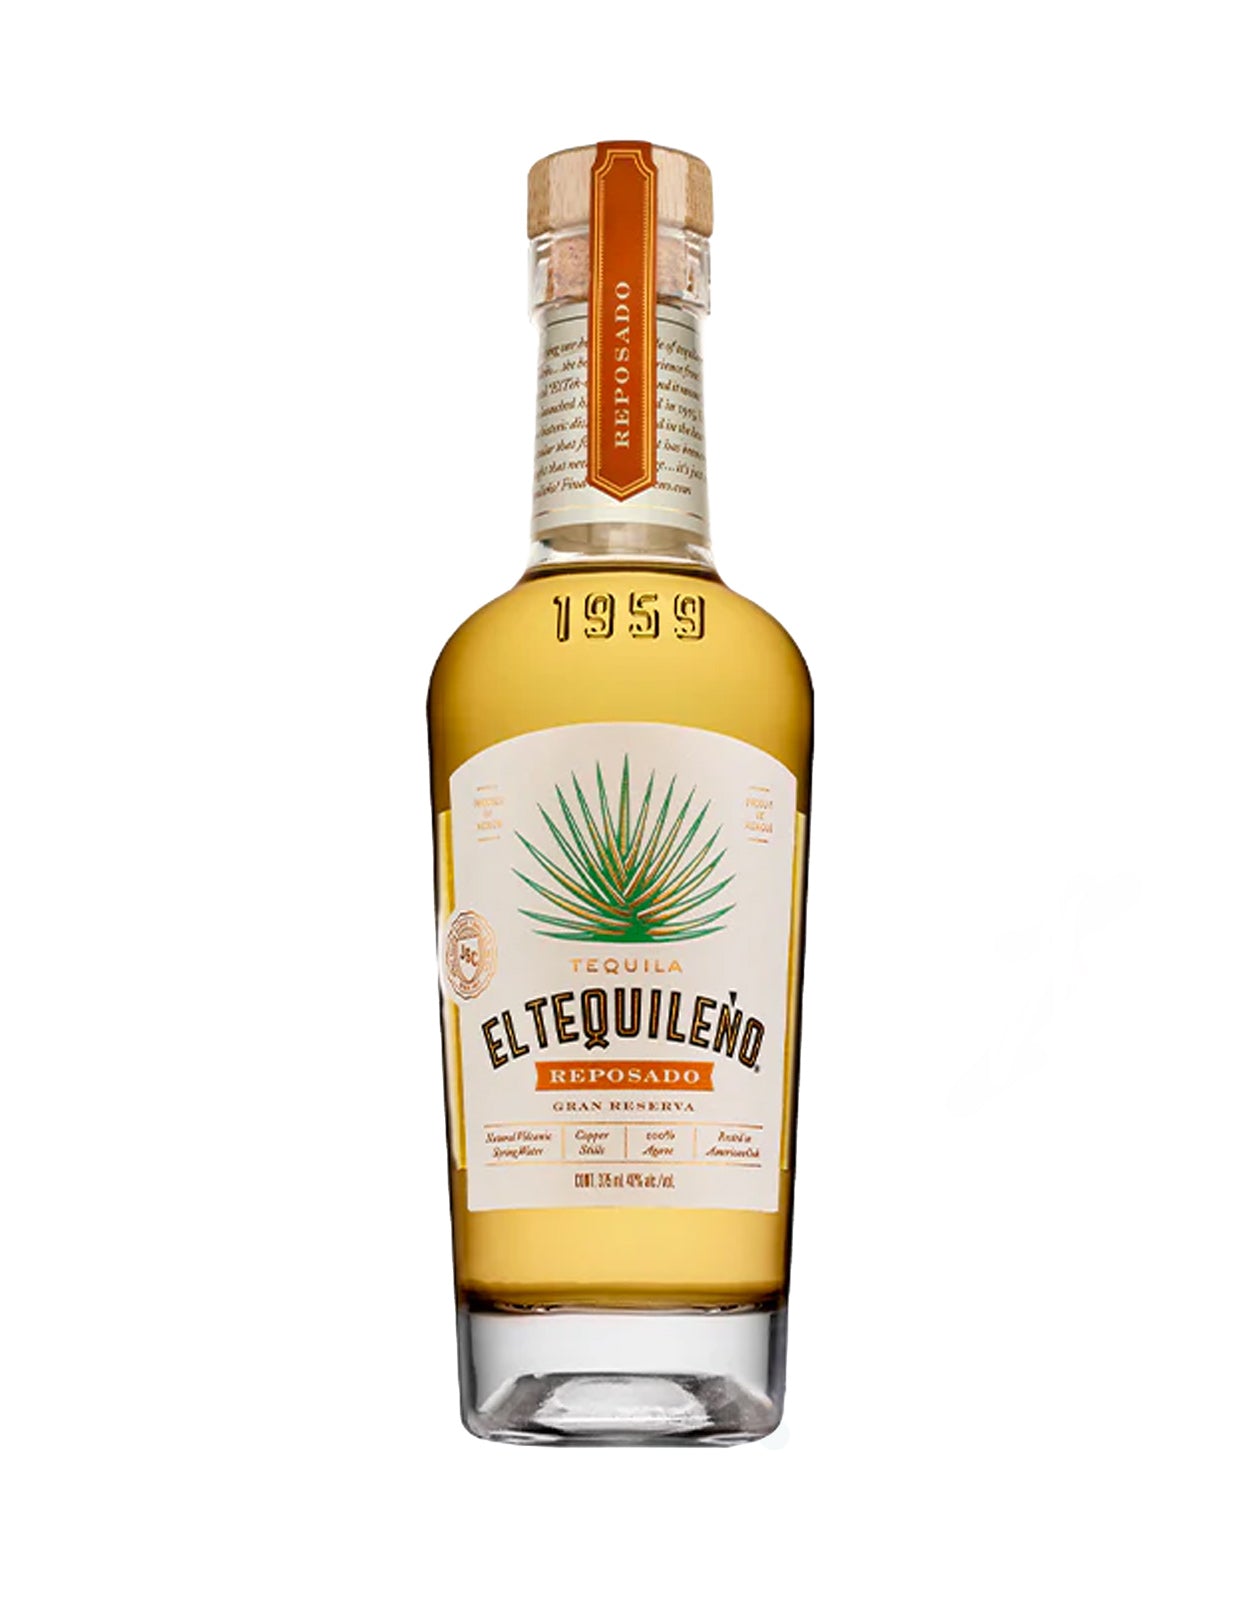 El Tequileno Gran Reserva Reposado Tequila - 375 ml